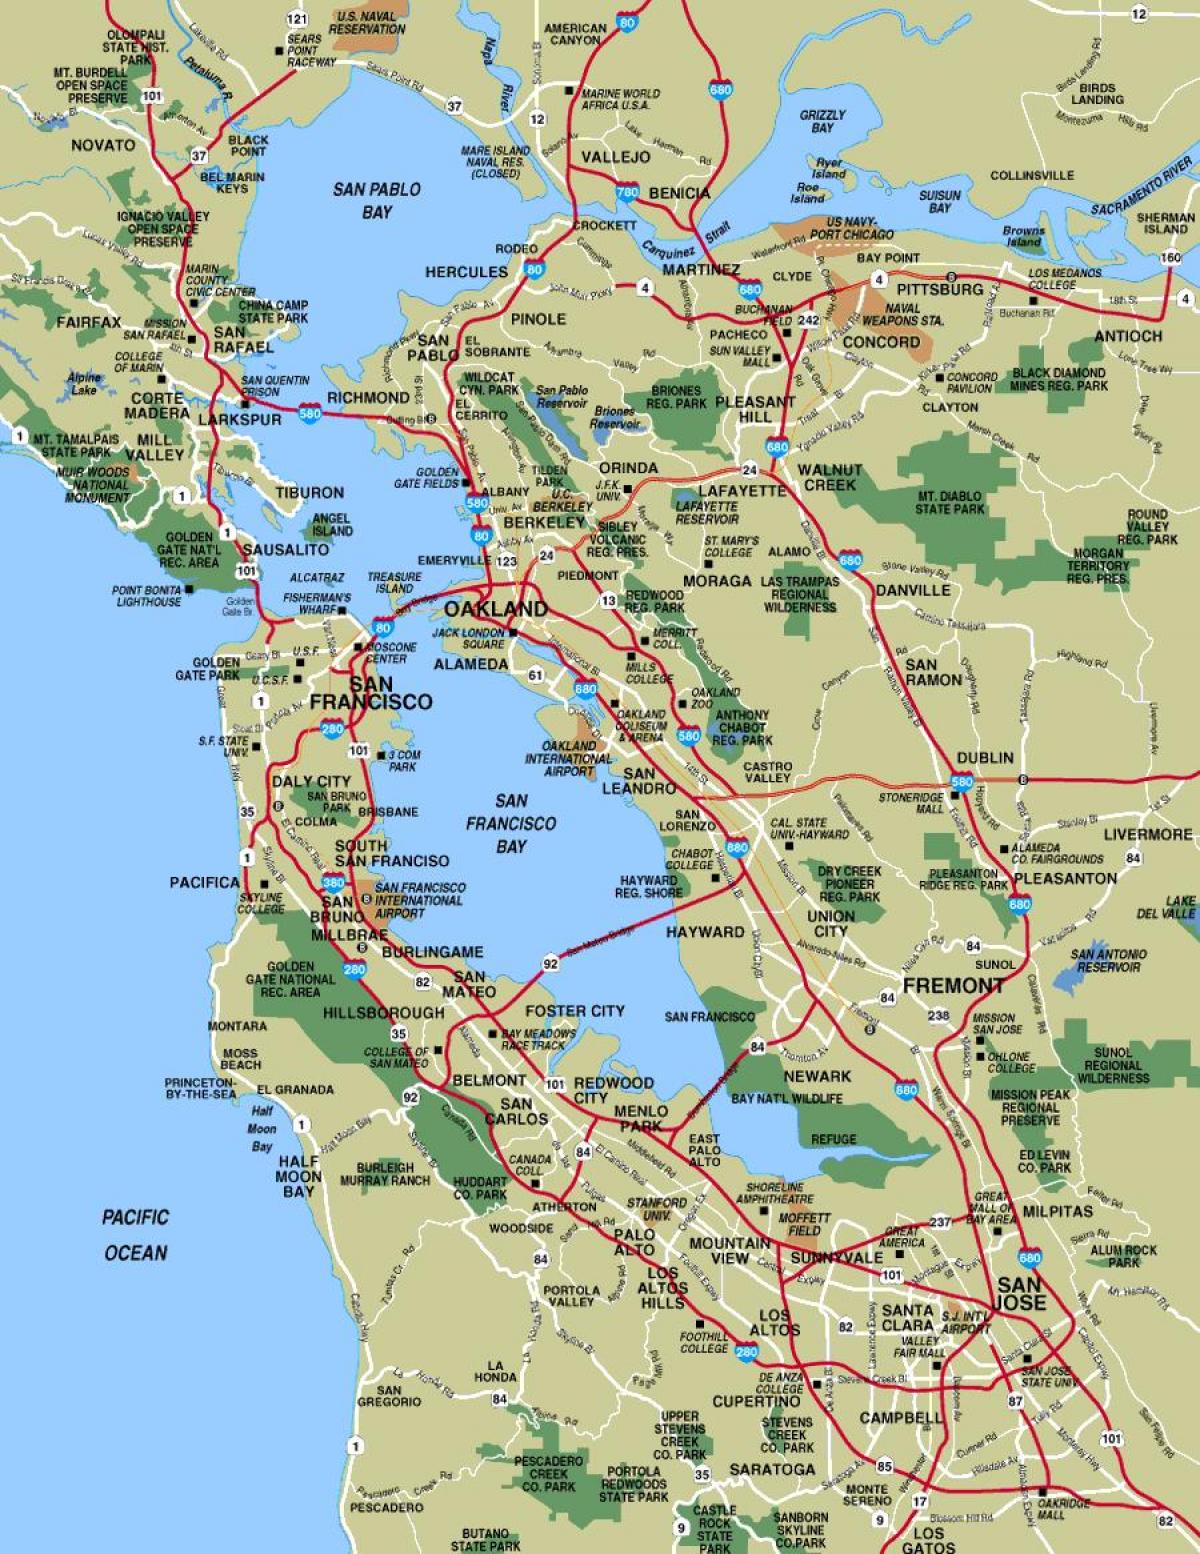 સાન ફ્રાન્સિસ્કો અને વિસ્તાર નકશો